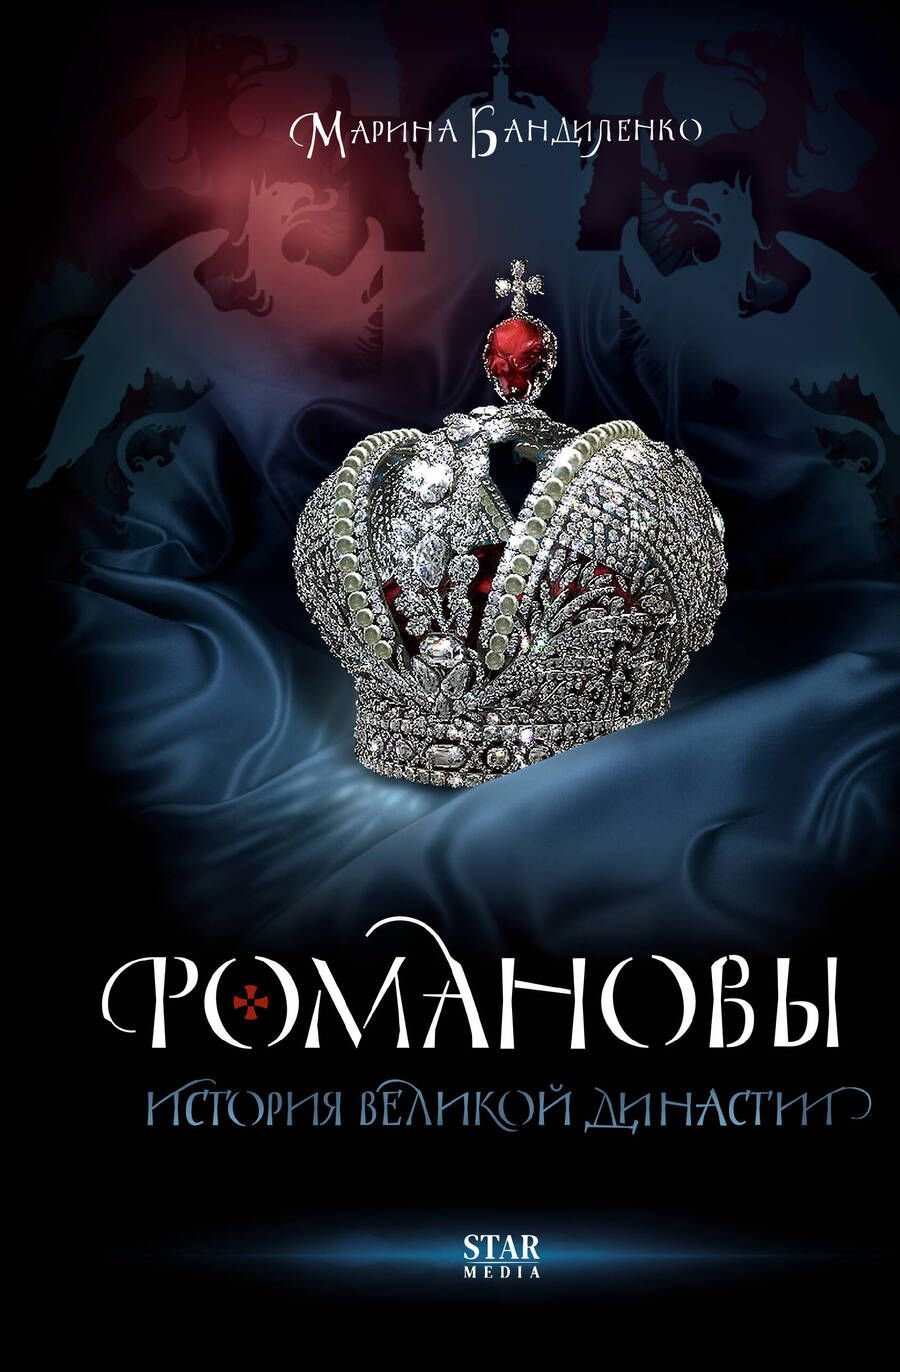 Обложка книги "Бандиленко: Романовы. История великой династии"